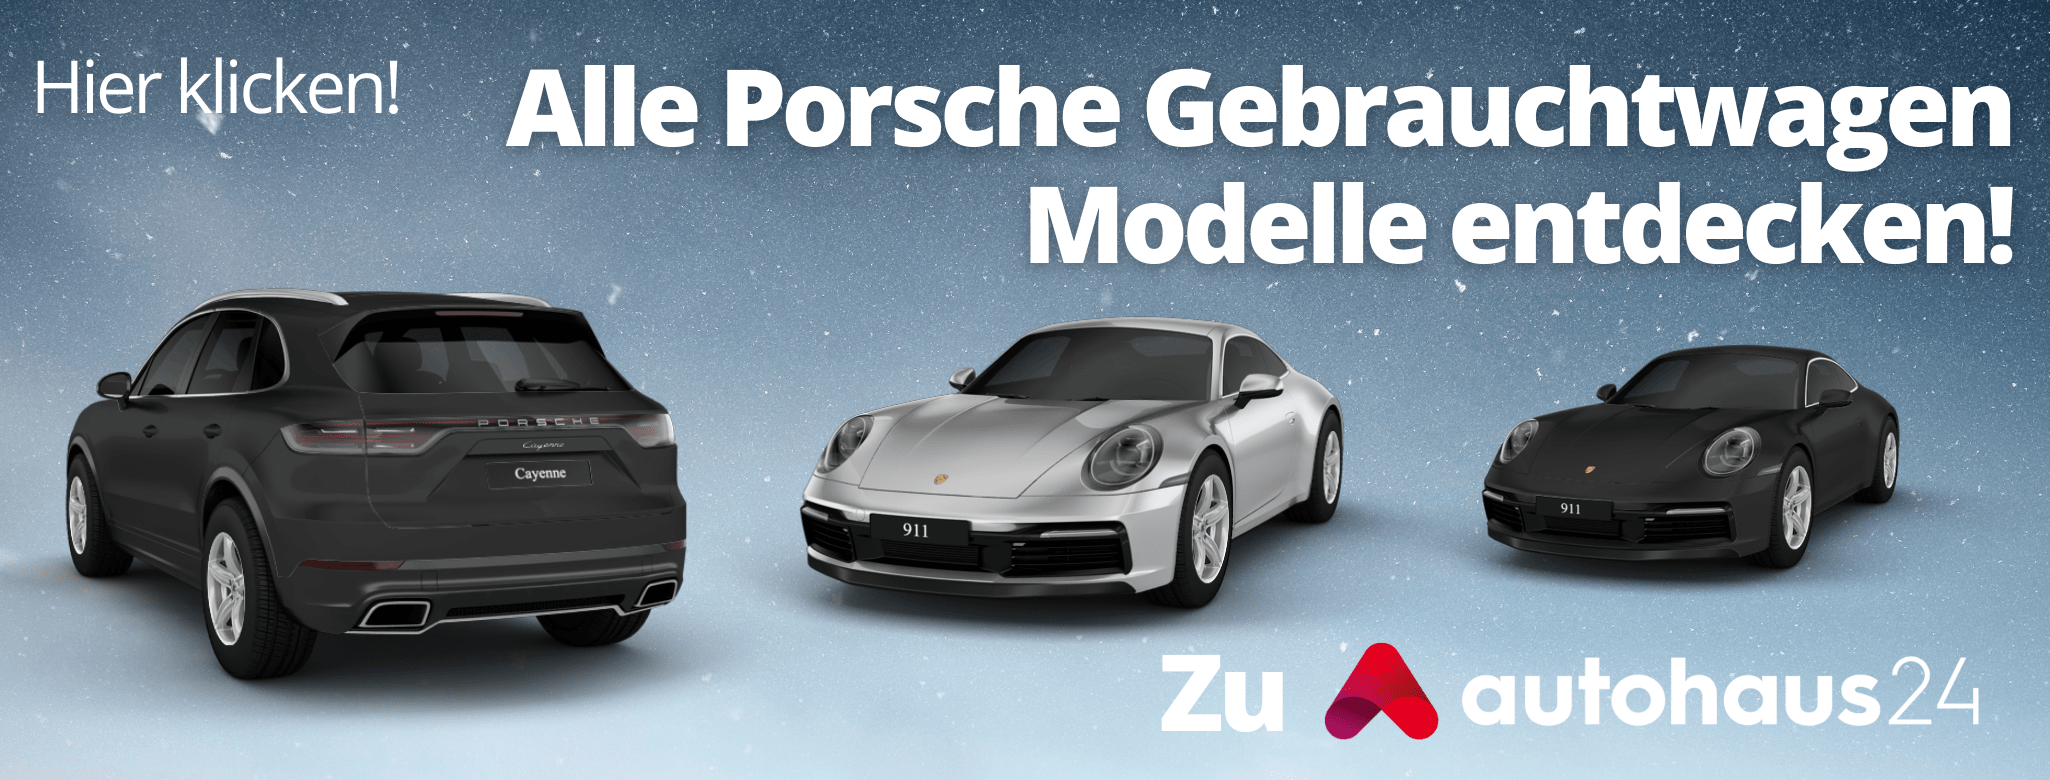 Porsche Gebrauchtwagen Angebote Finanzierung Leasing Sixt Neuwagen